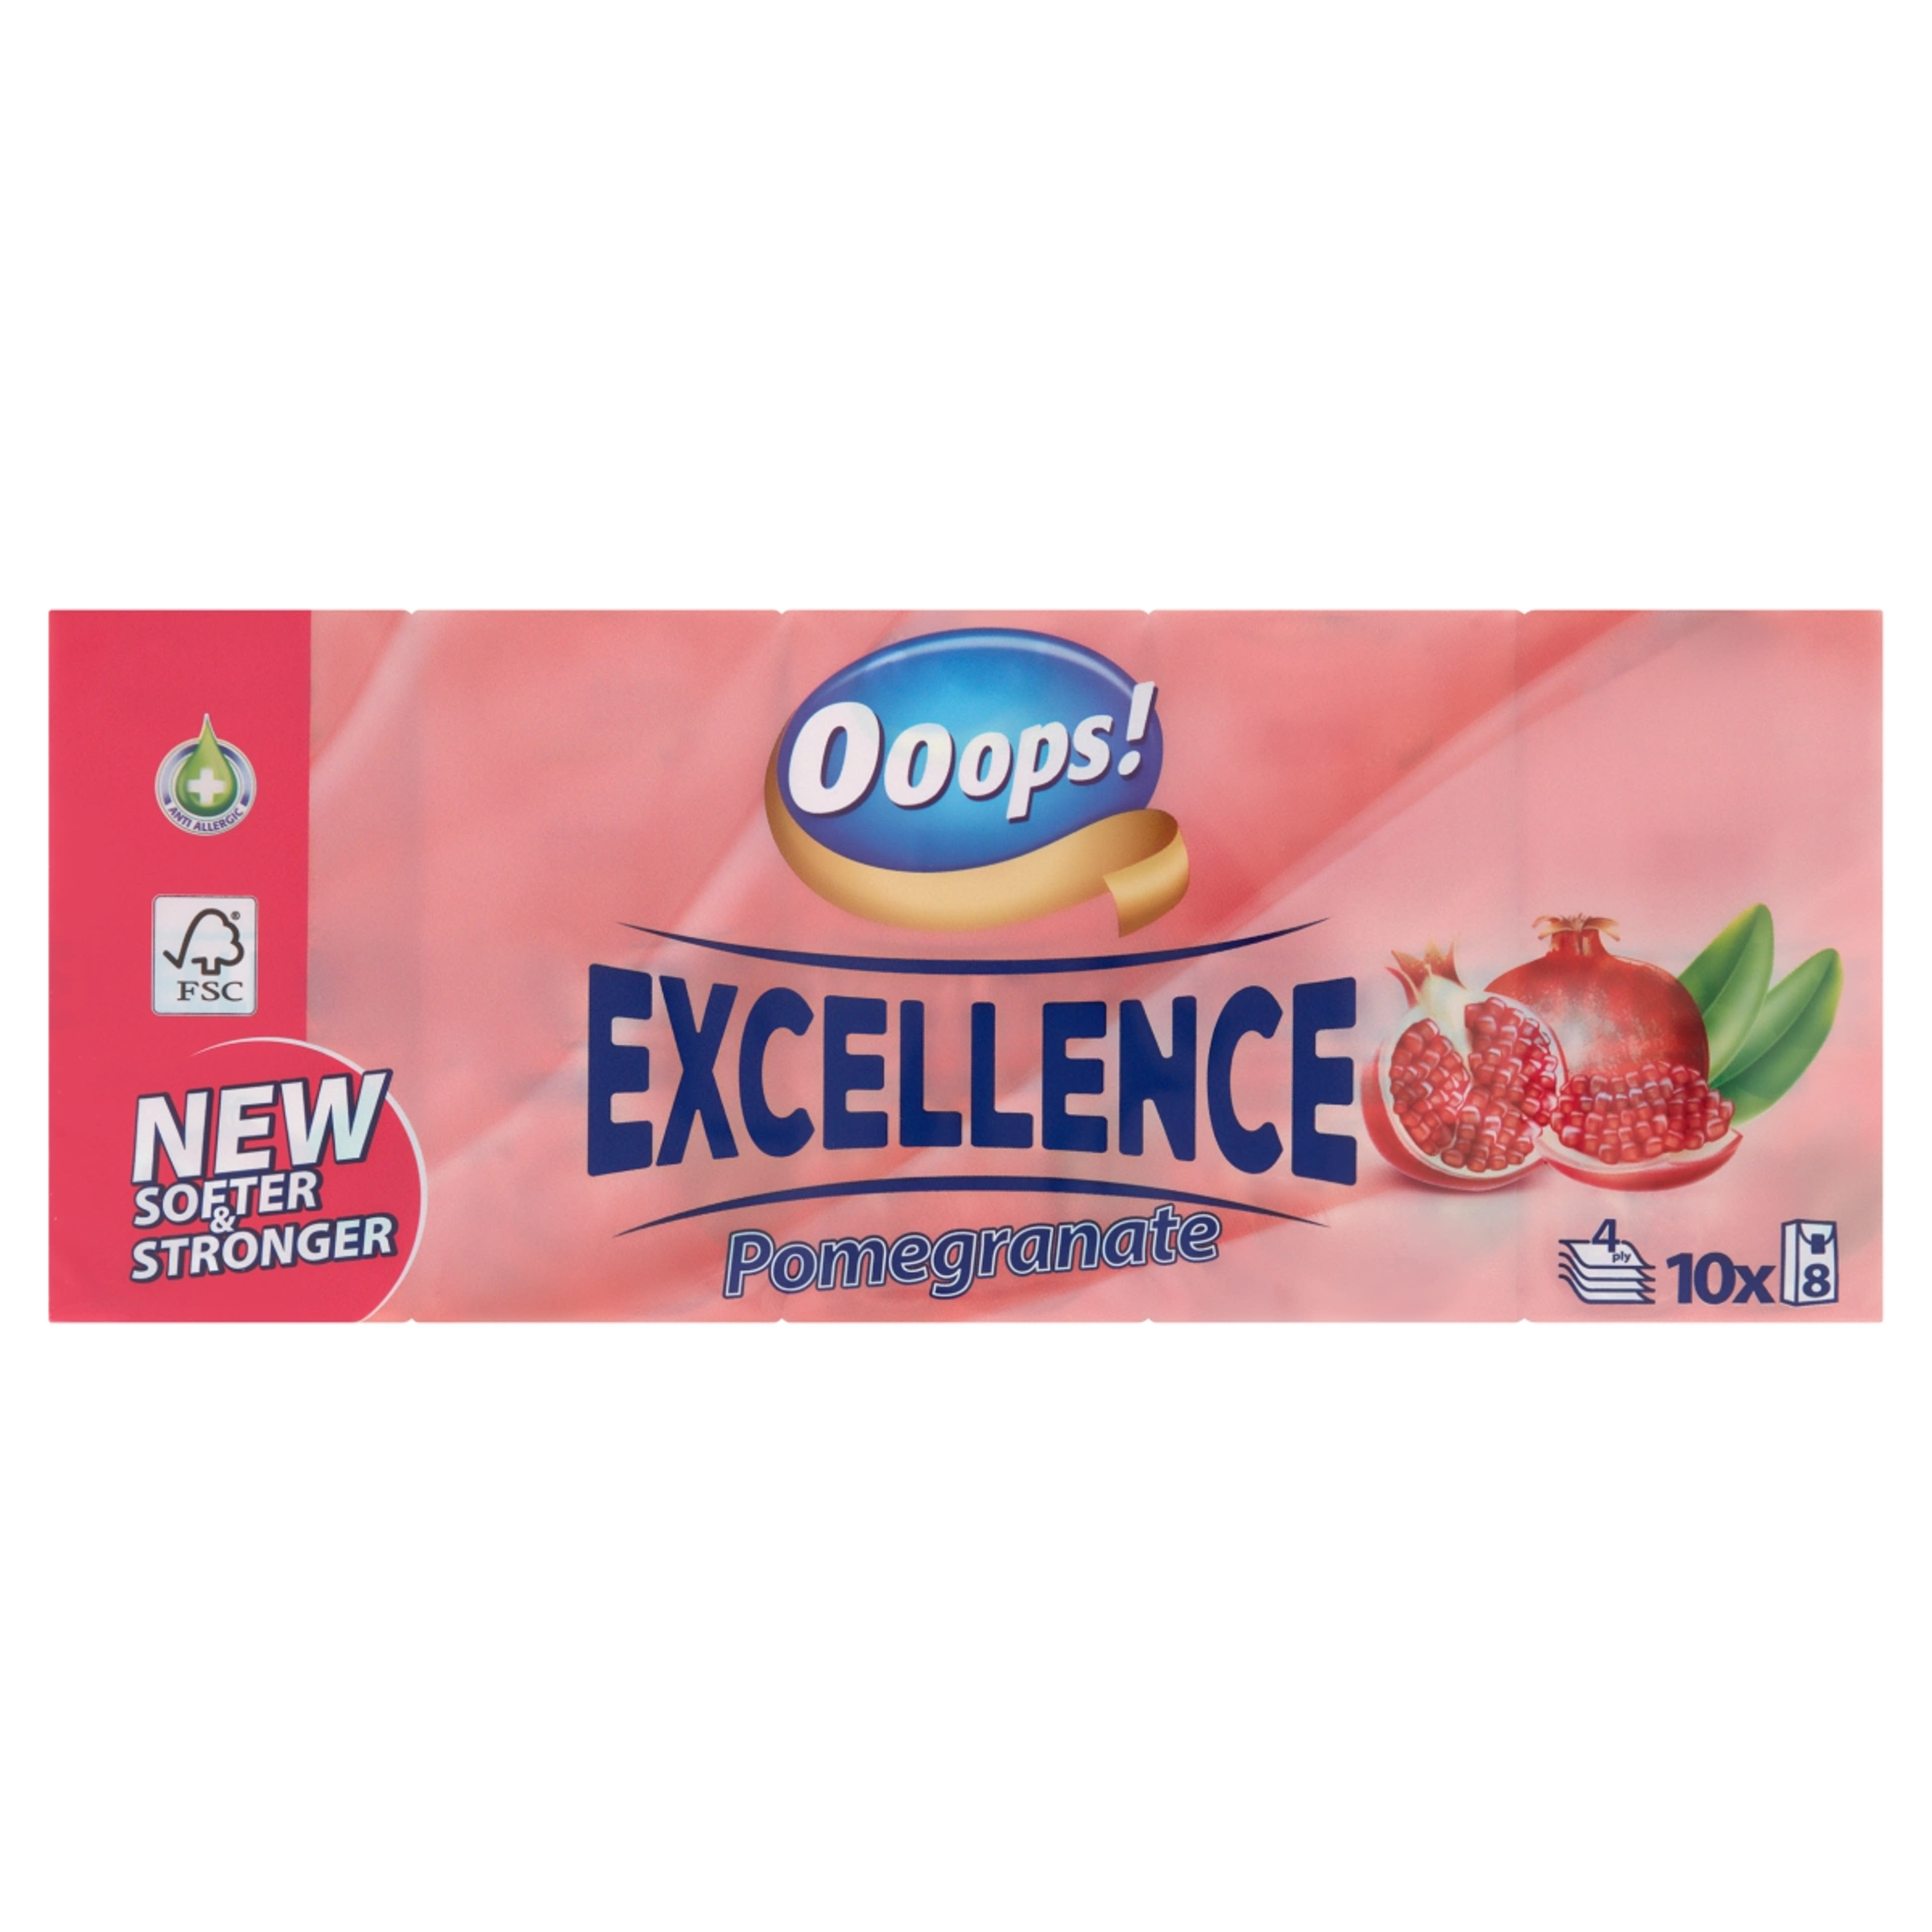 Ooops! Excellence Pomegranate illatosított papír zsebkendő, 4 rétegű, 10 x 8 db - 1 db